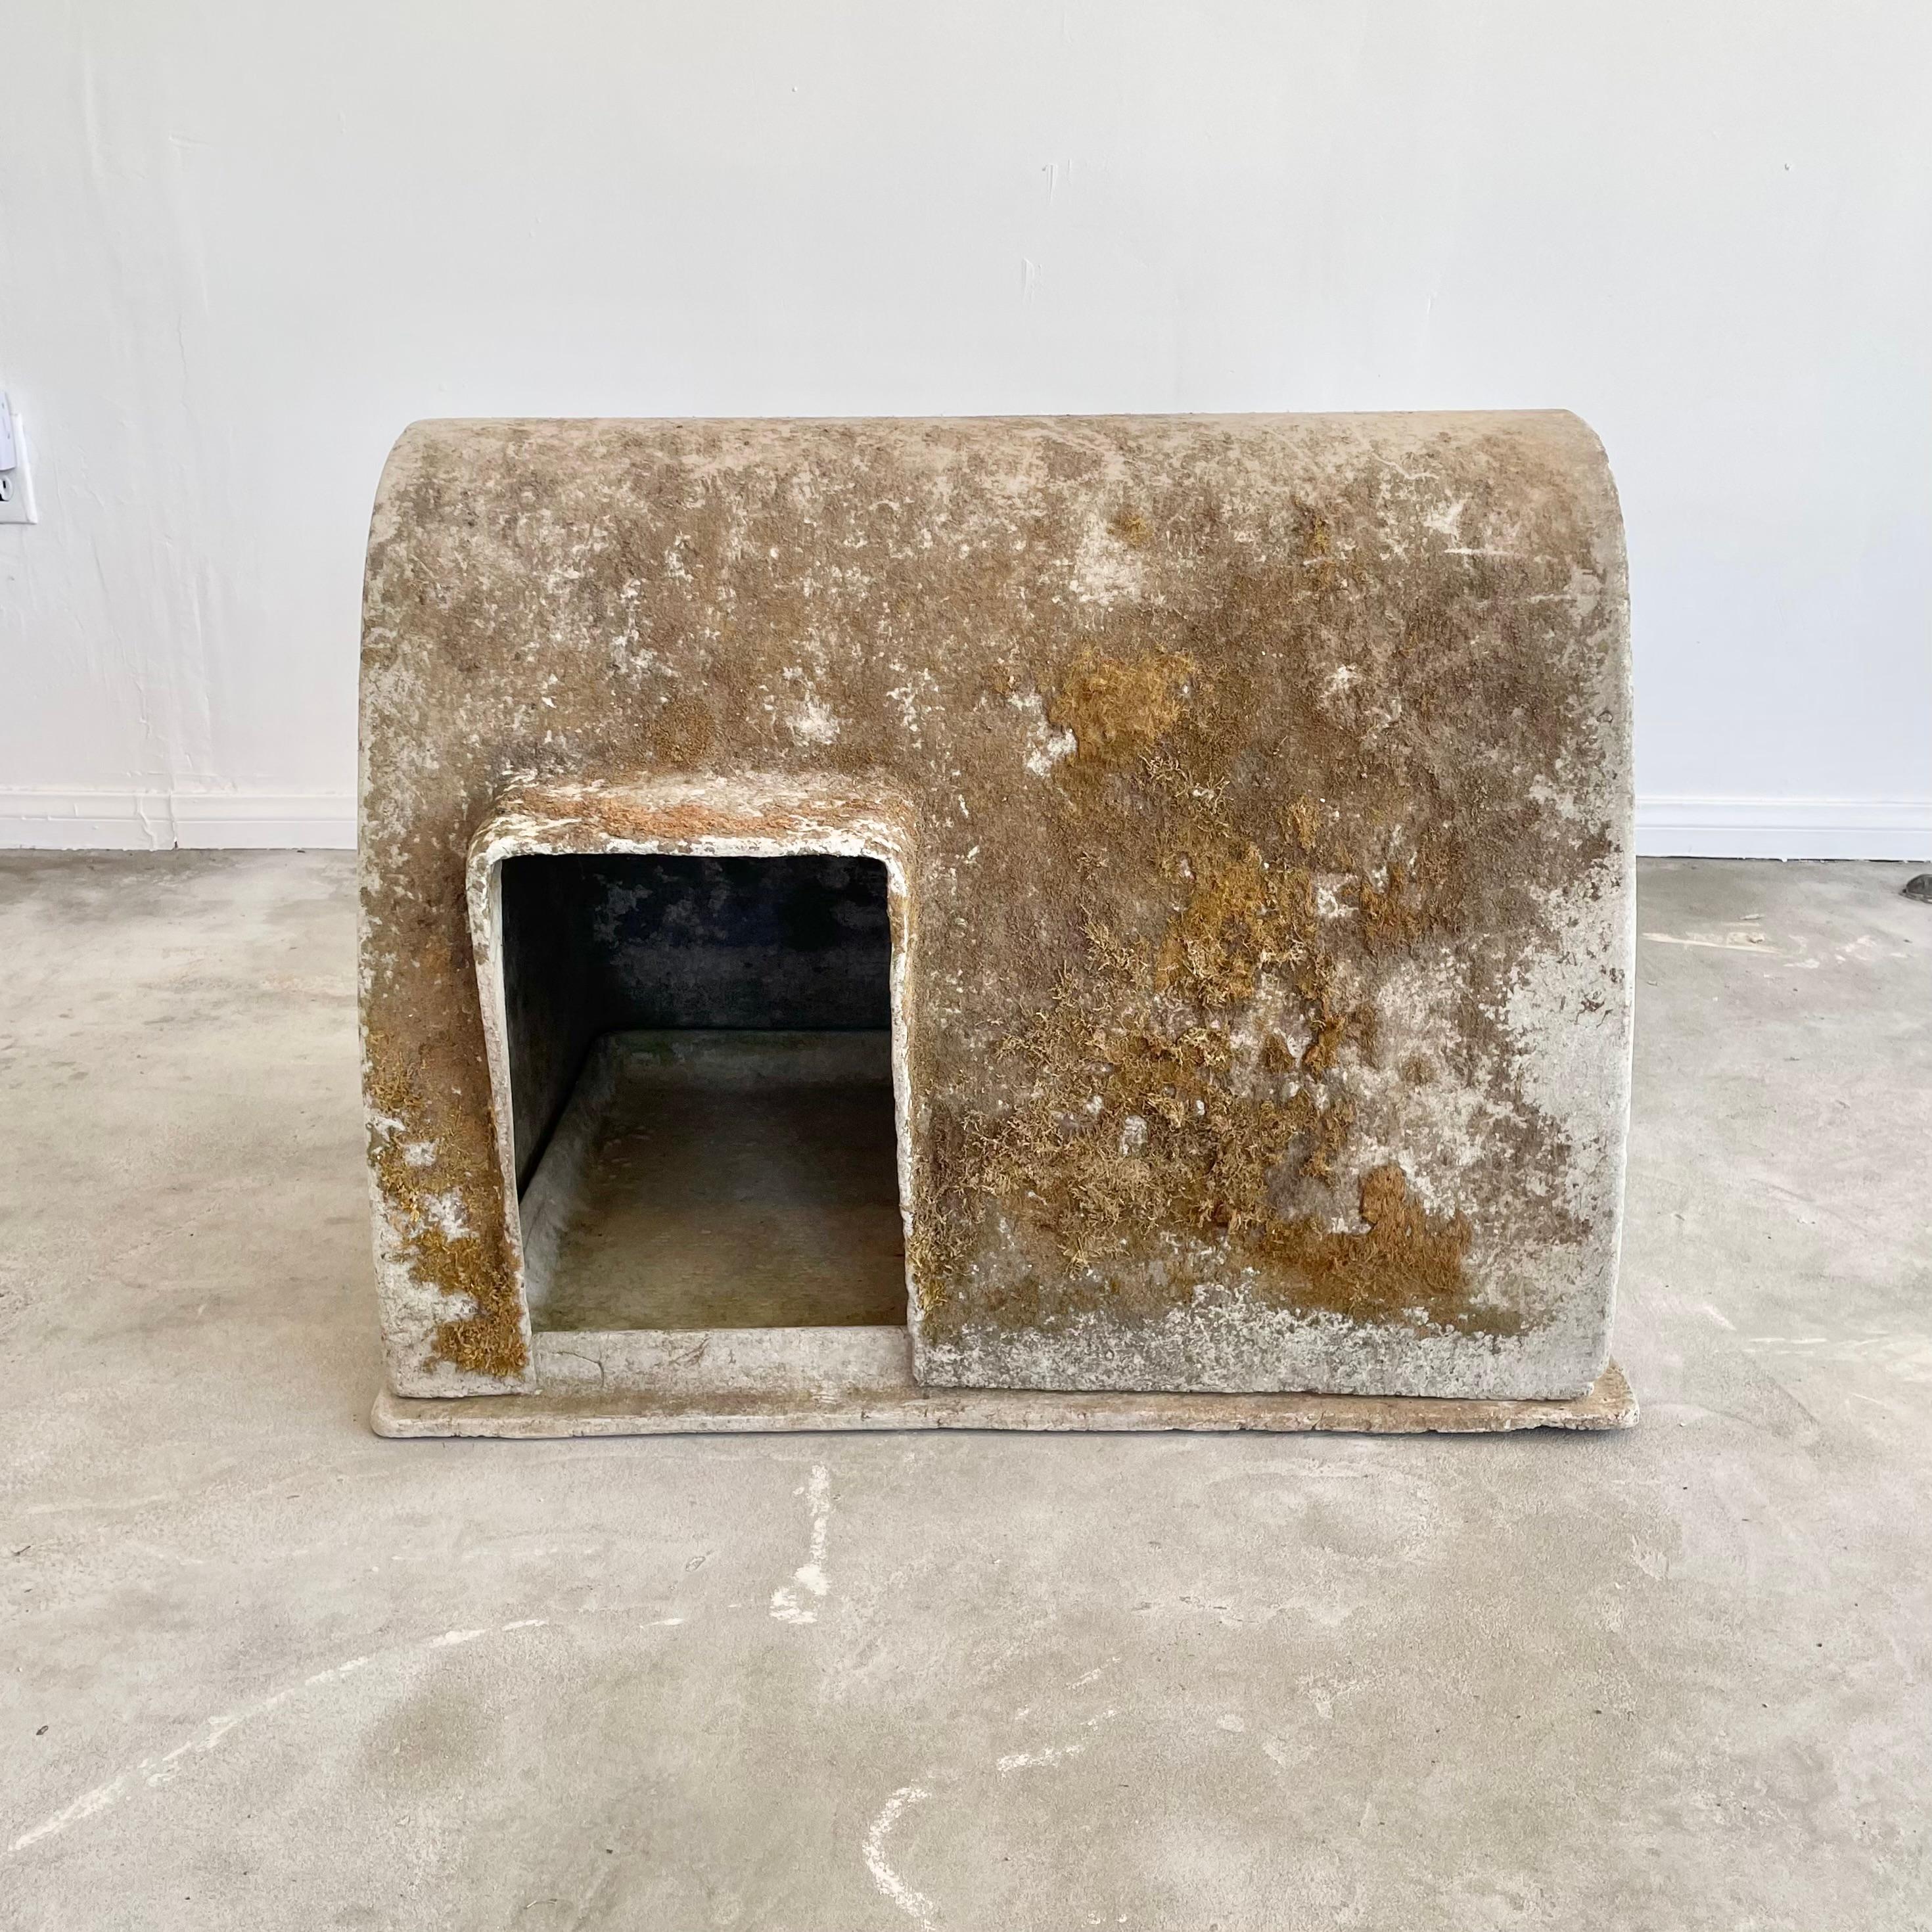 Erstaunliche industrielle Hundehütte aus Zement vom Schweizer Designer Willy Guhl für Eternit. Äußerst seltene Größe mit starker Patina und Flechten. Eine kleine Hundetür befindet sich an der unteren linken Seite der Struktur, die 9,75